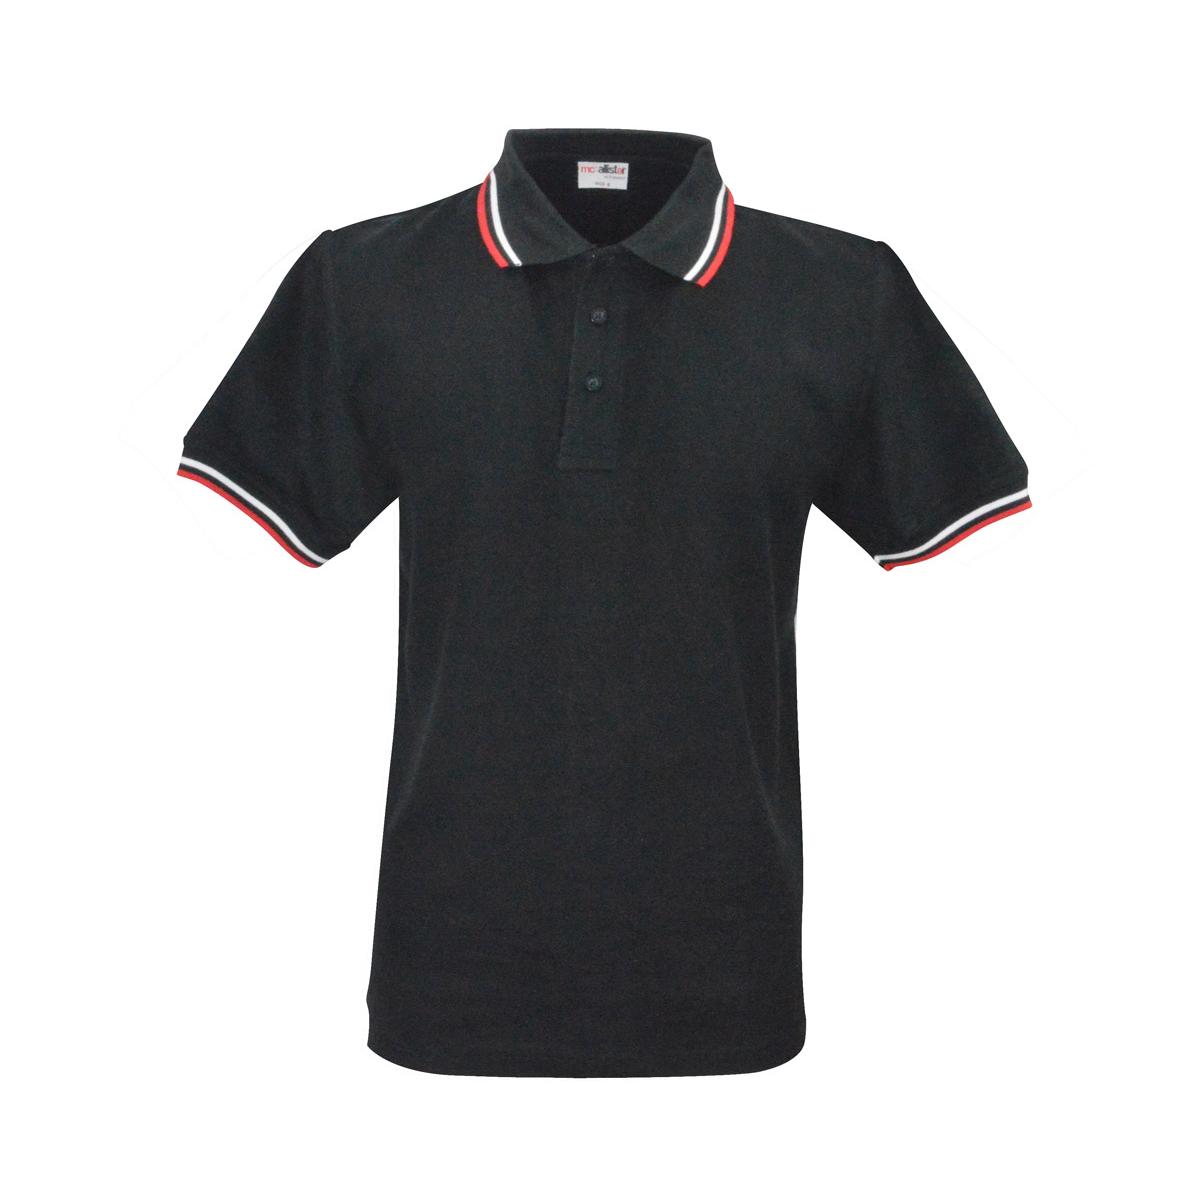 Active Wear - Männer Polo-Shirt - schwarz - rot - weiß